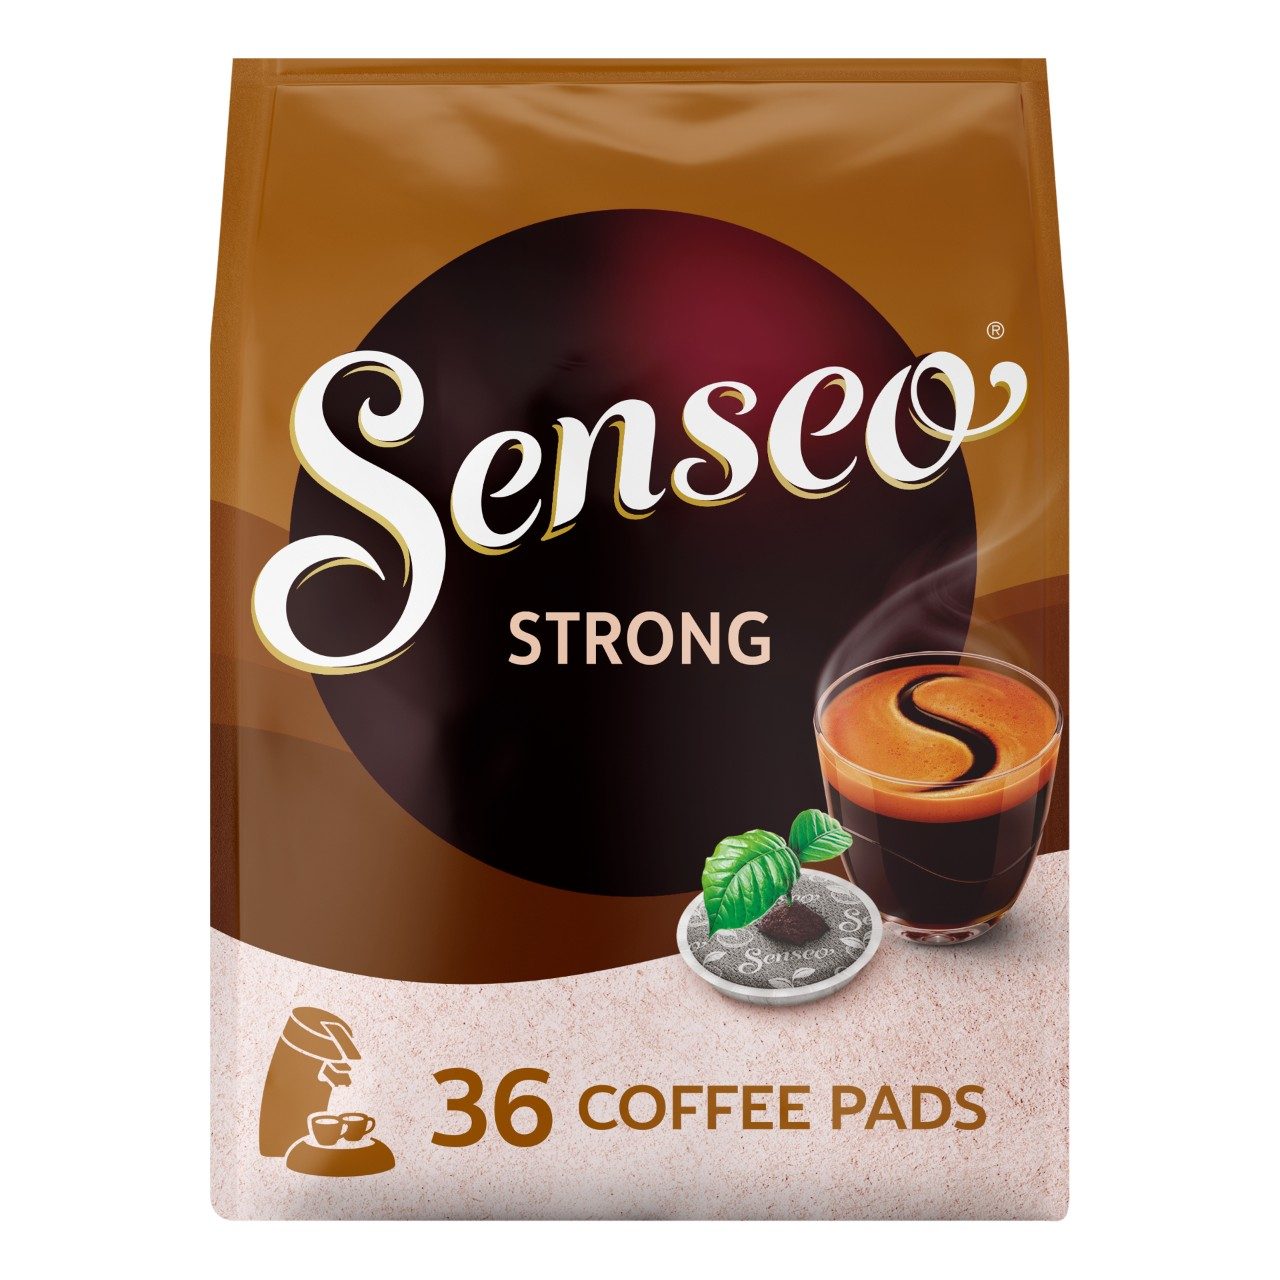 Strong koffiepads